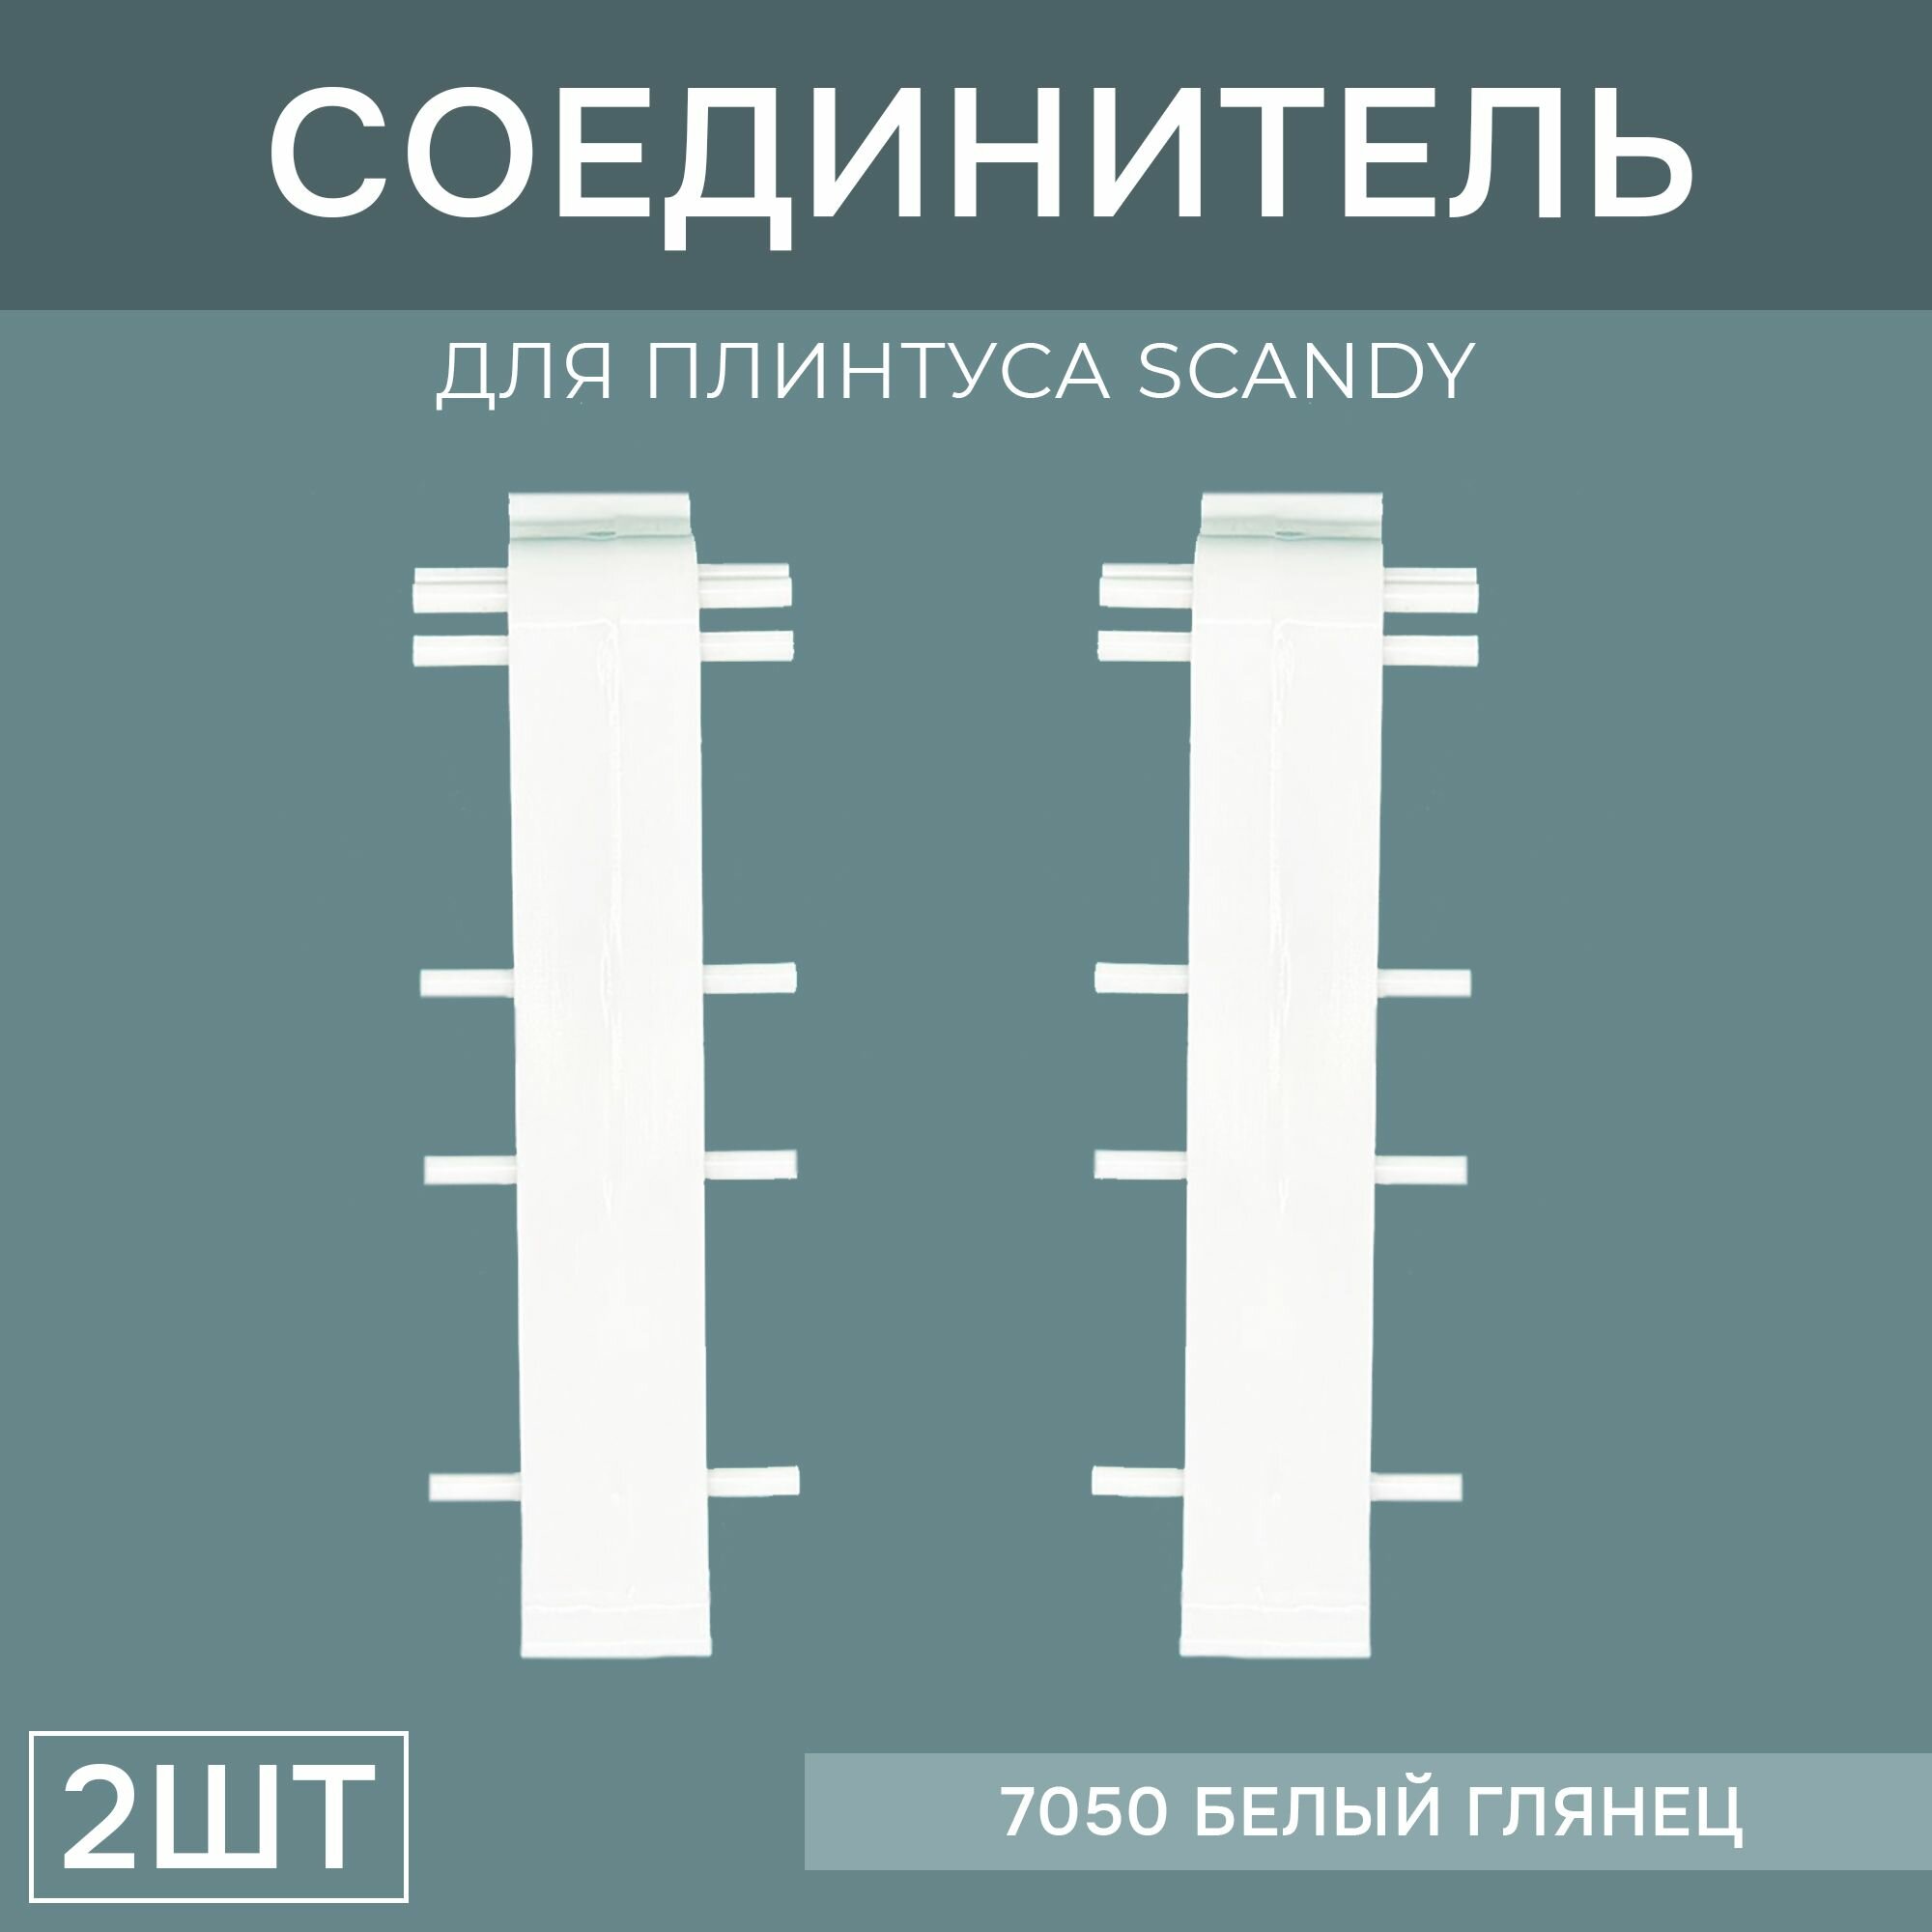 Соединитель 72мм для напольного плинтуса Scandy 1 блистер по 2 шт, цвет: Белый Глянец